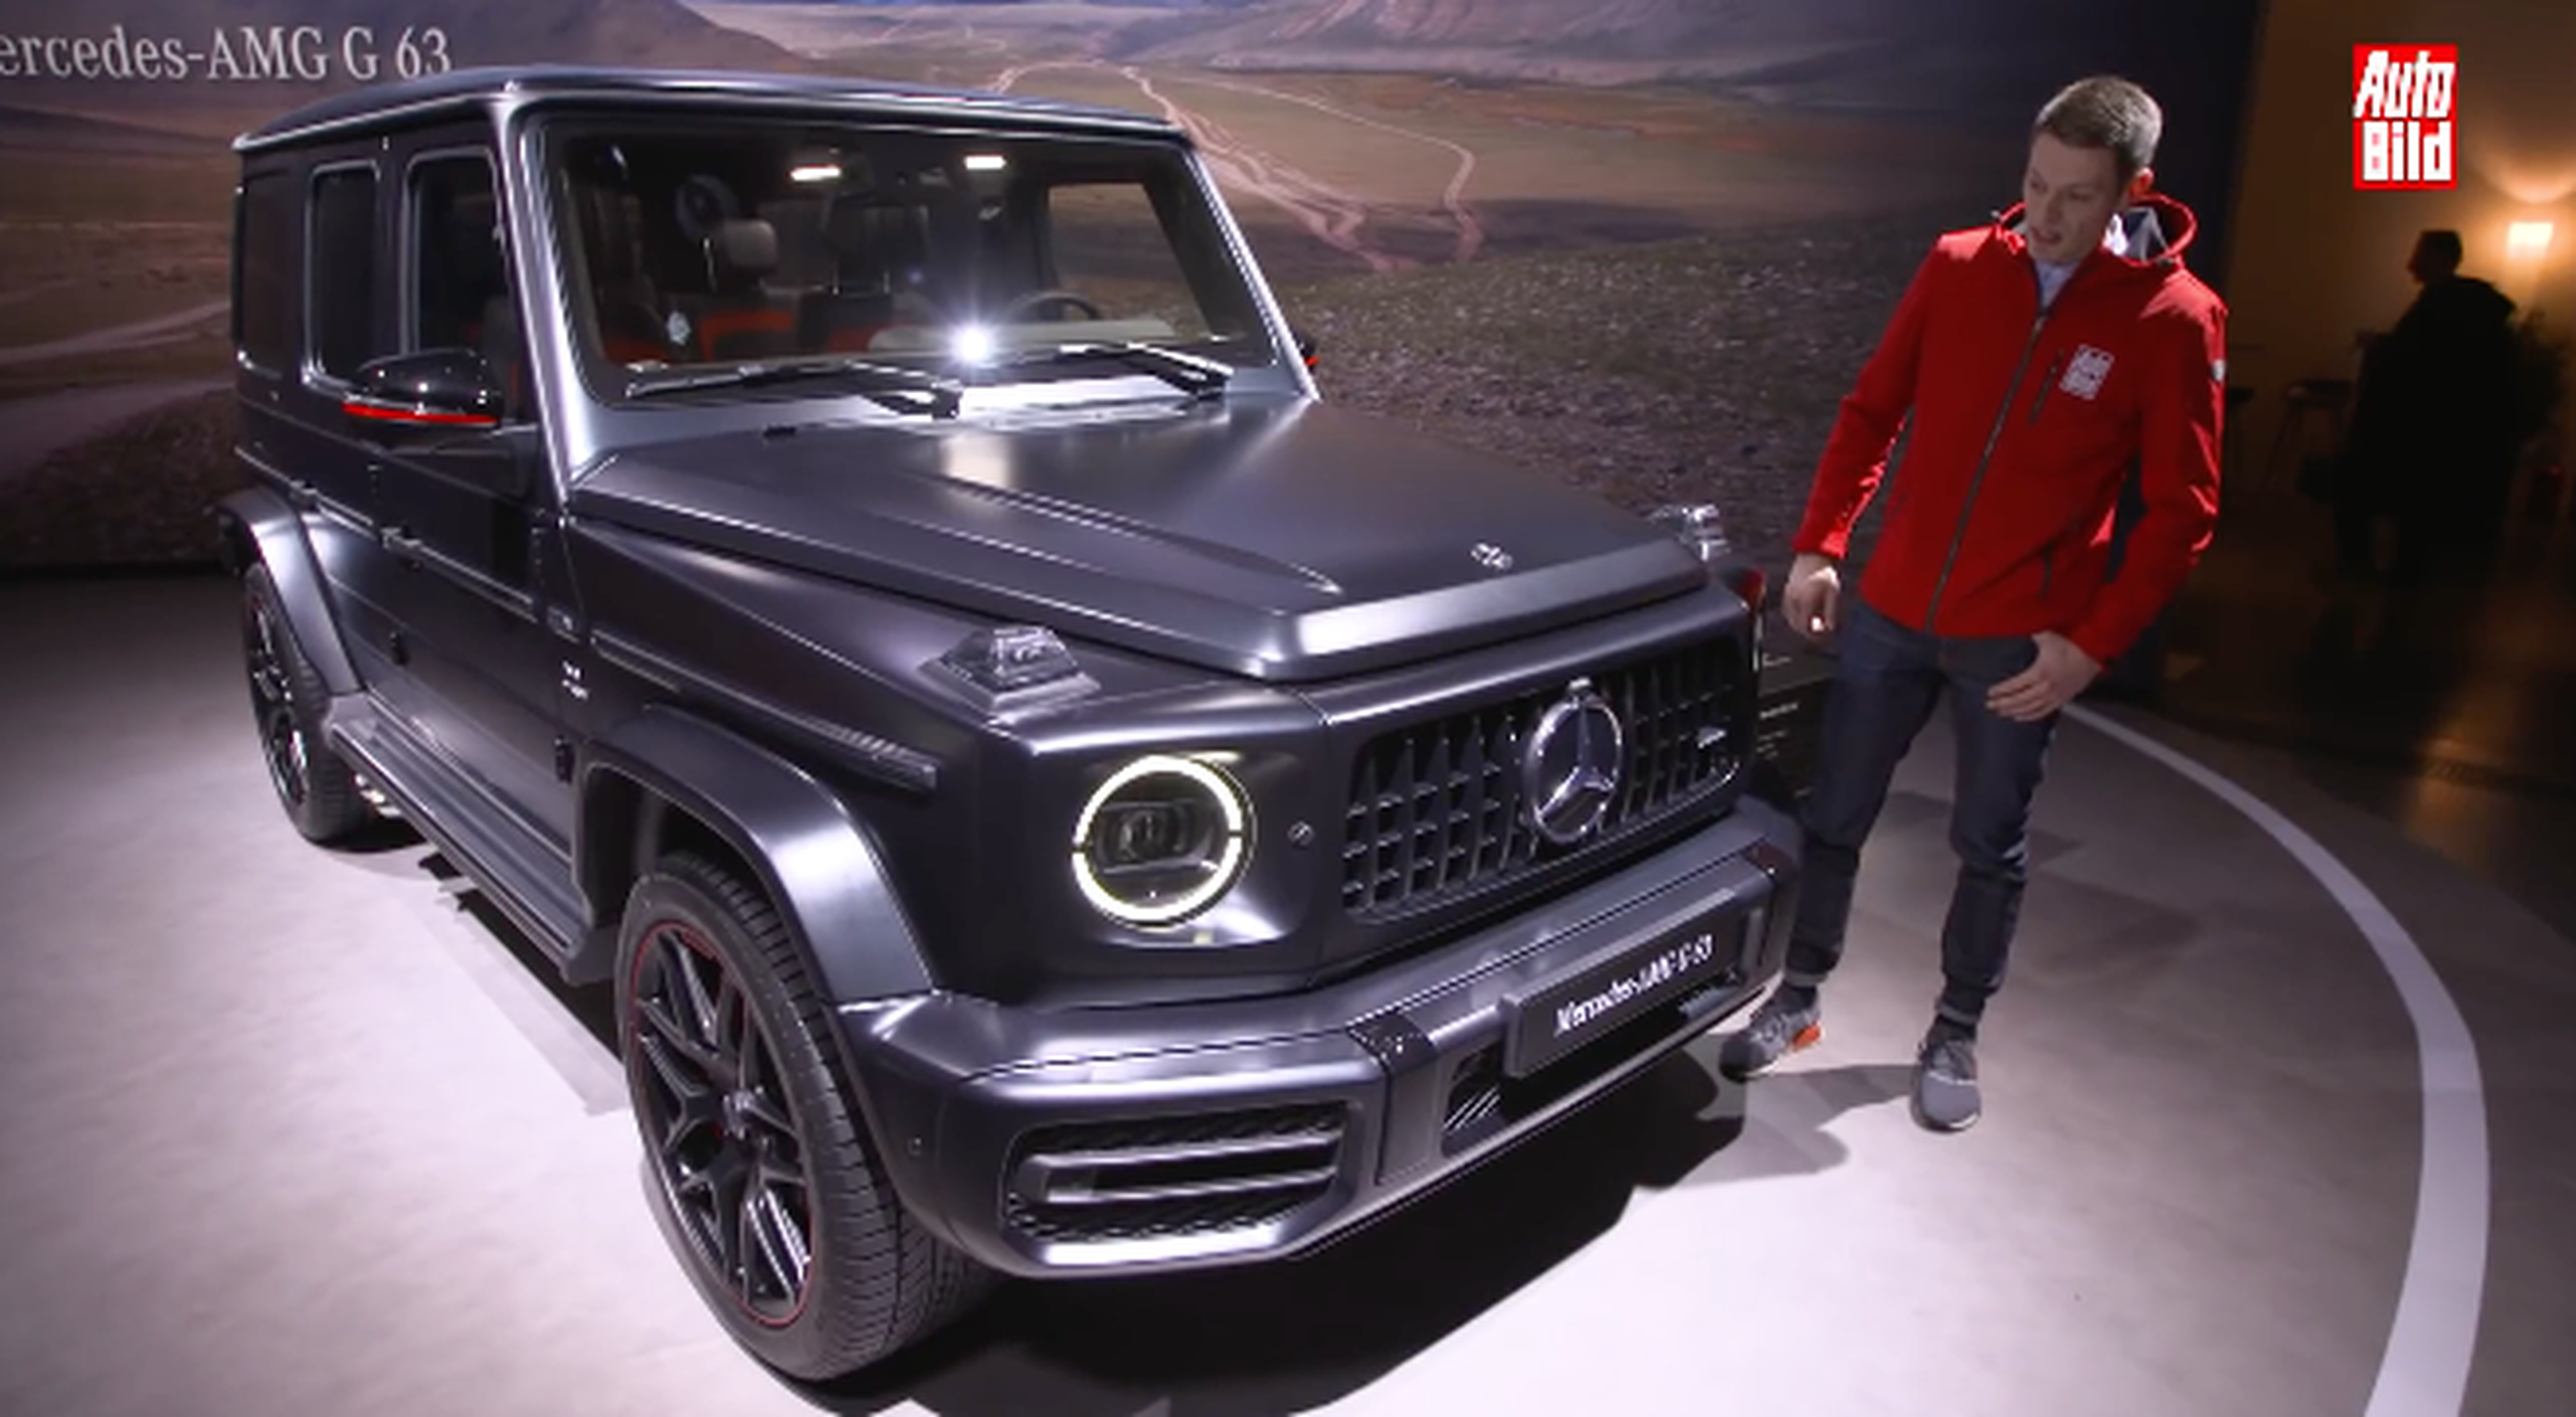 VÍDEO: Mercedes-AMG G 63, ¡la mayor de las bestias!